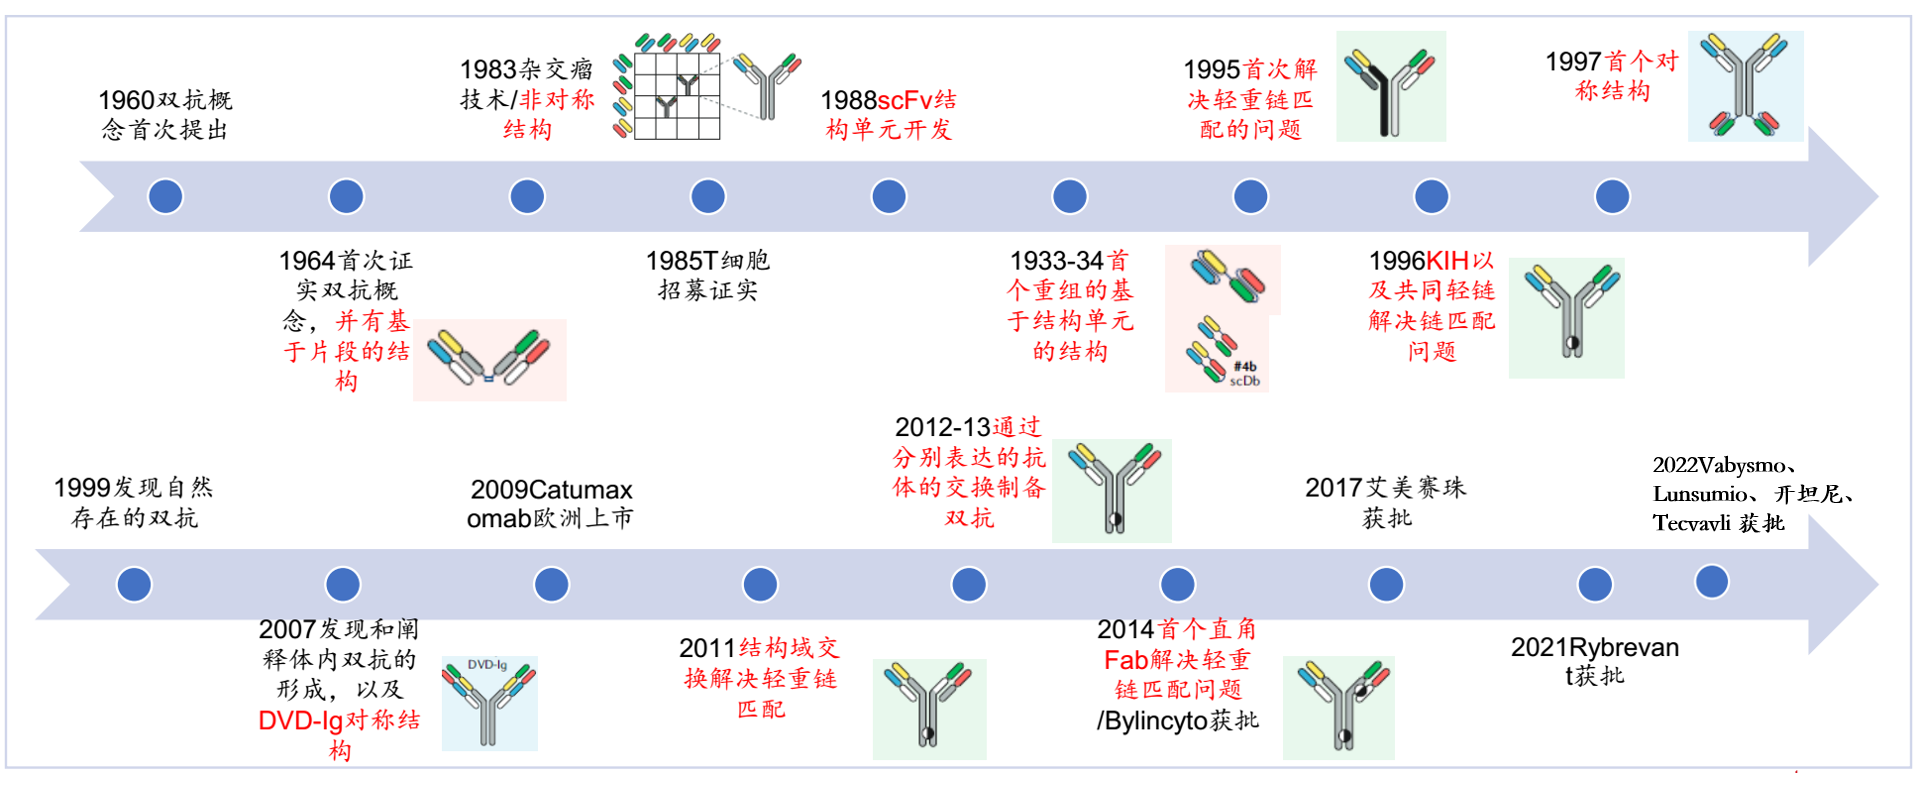 治疗性抗体和双特异性抗体开发时间轴